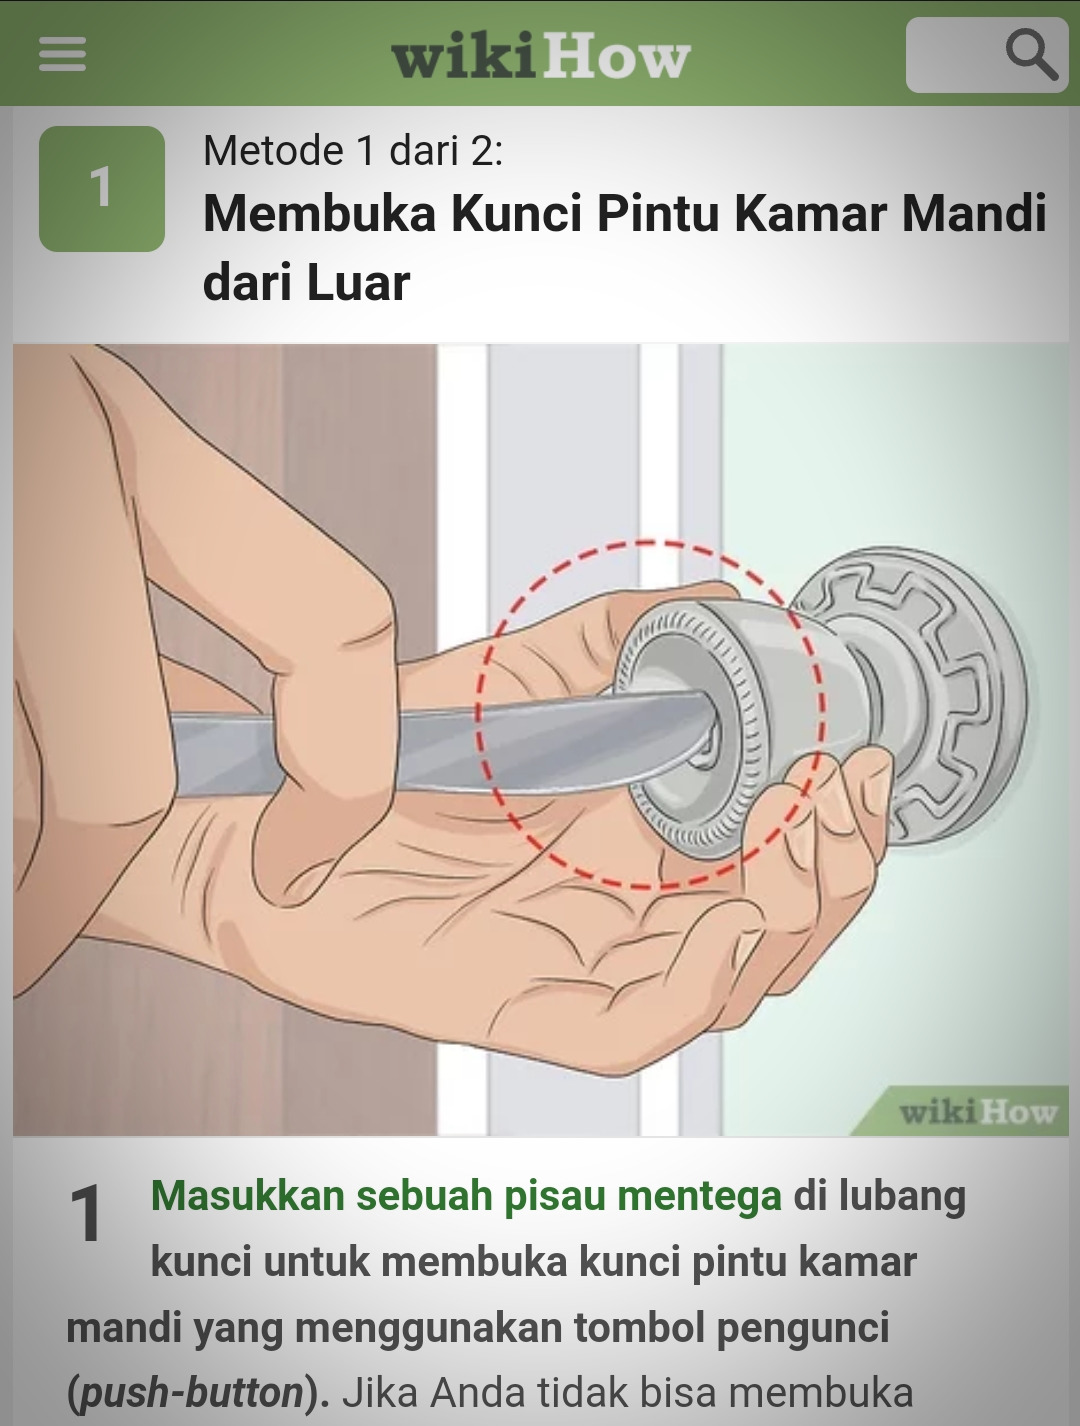 Mencegah lansia terkunci di kamar mandi